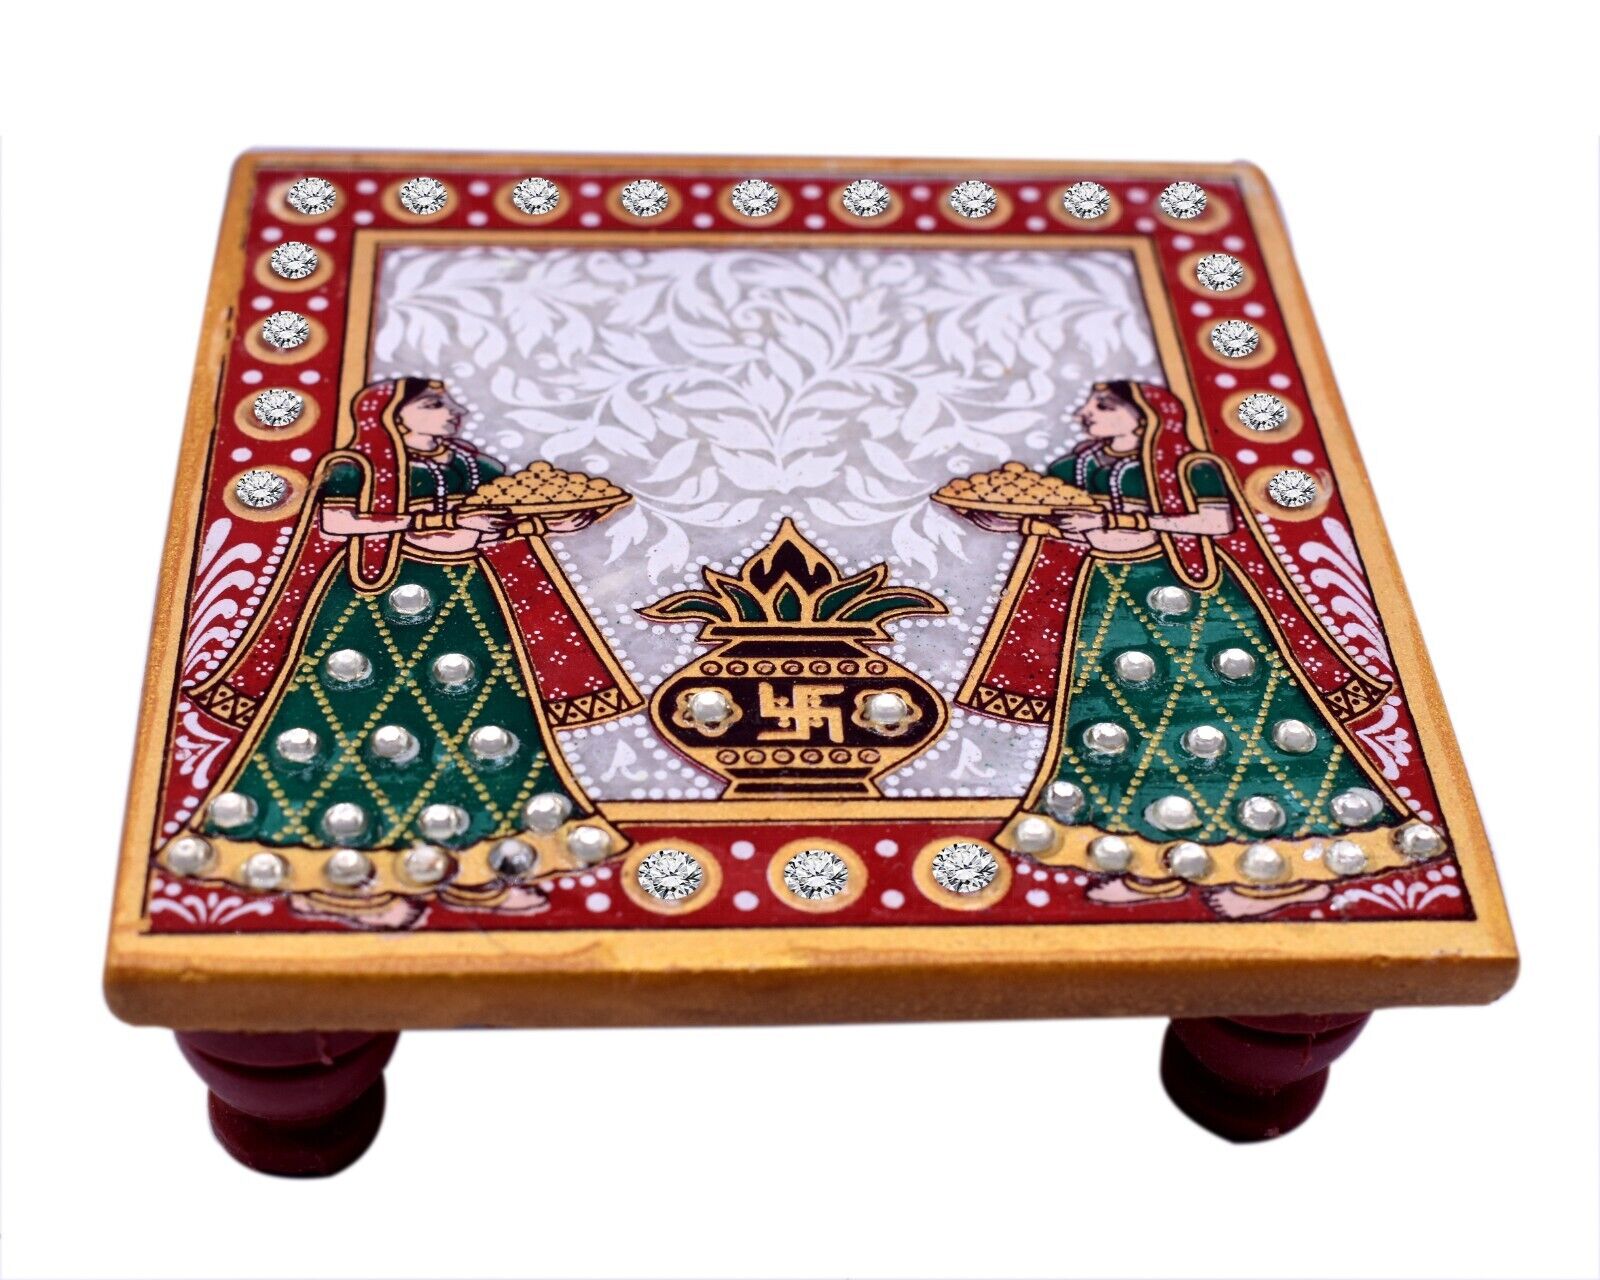 Handmade Small Marble Pooja Chowki with Kalash Panihari Art Design 4x4 Inch